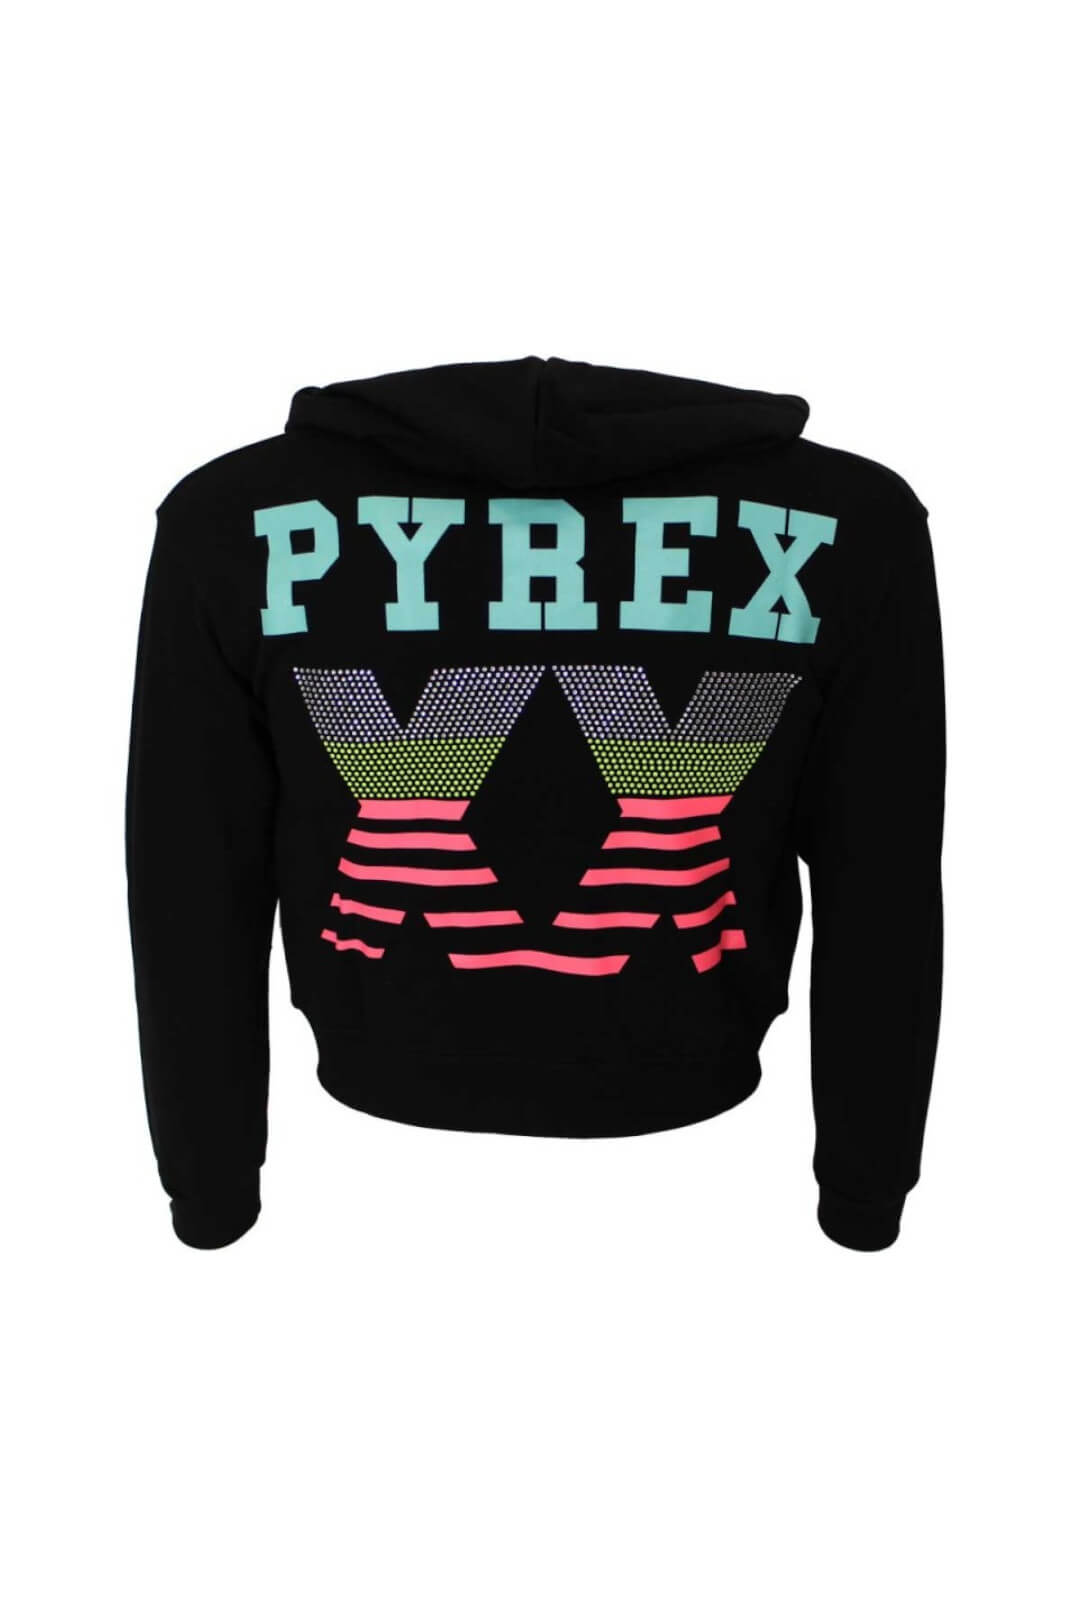 Pyrex Girl's sweatshirt with rhinestones